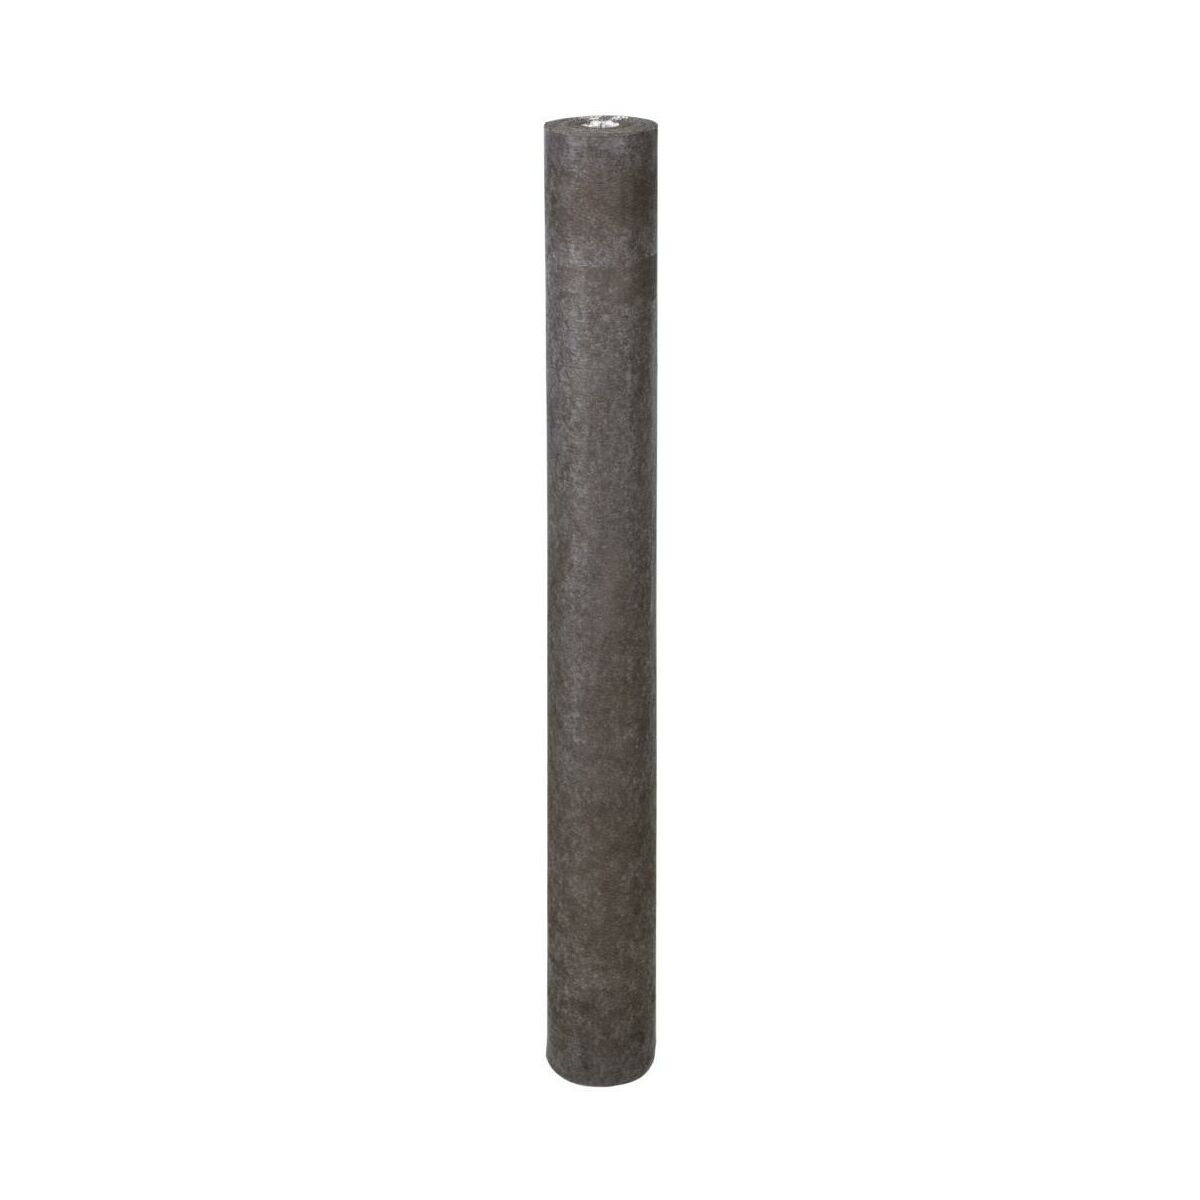 Podkład podłogowy Extreme Alu Heat 1.6 mm 8m2 Axton